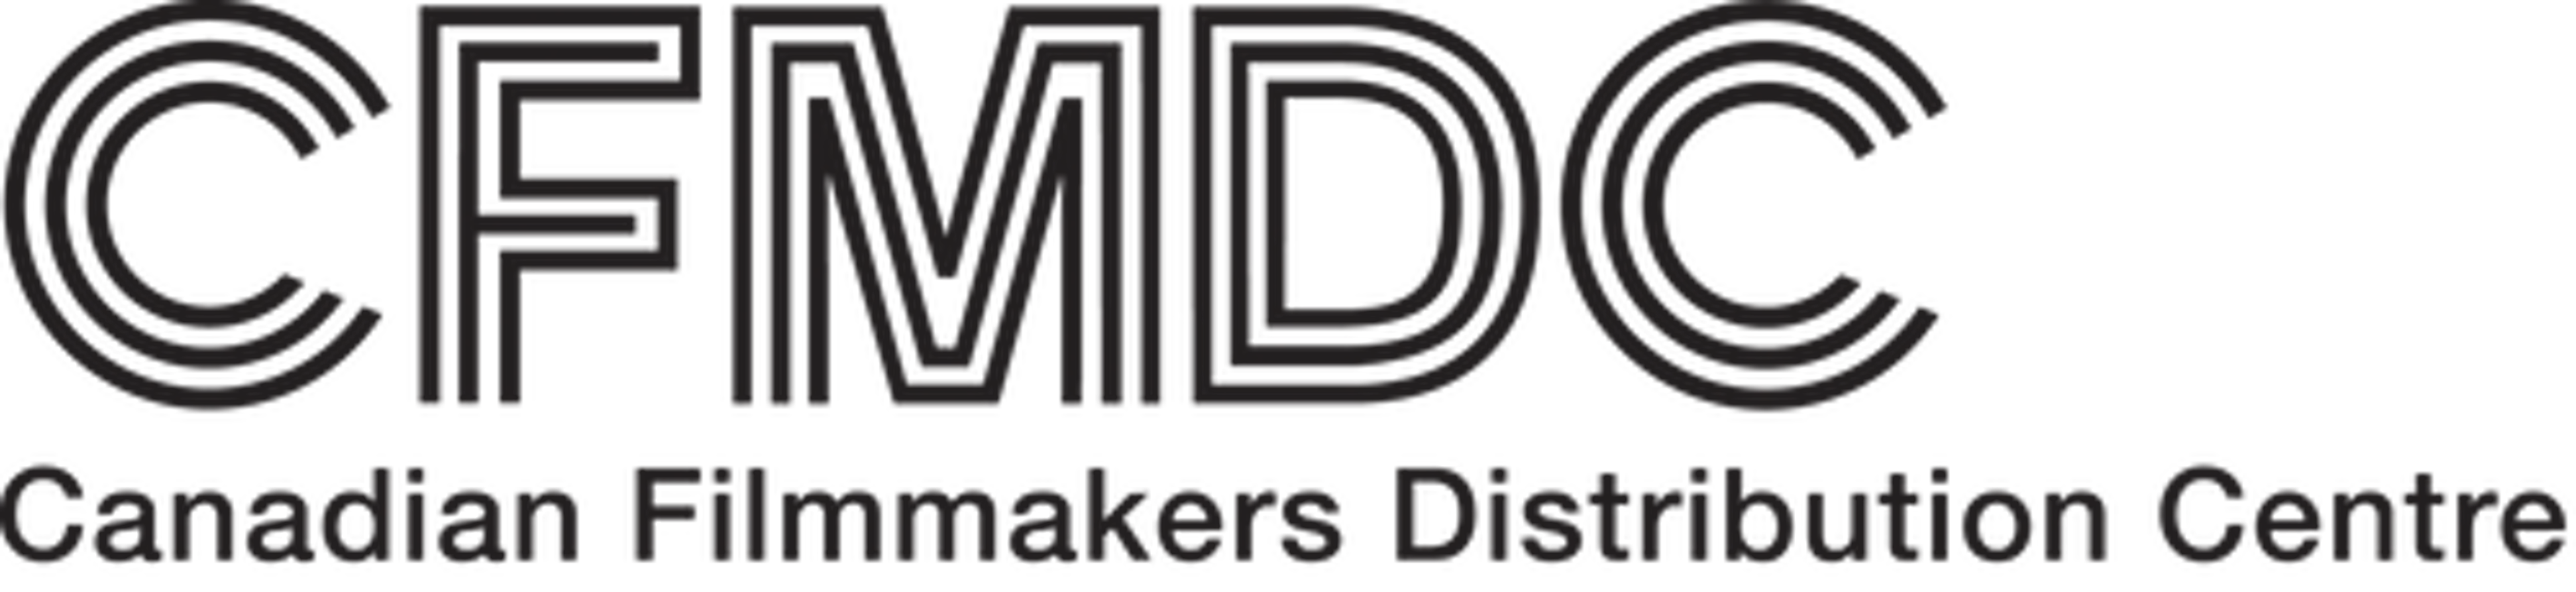 CFMDC logo